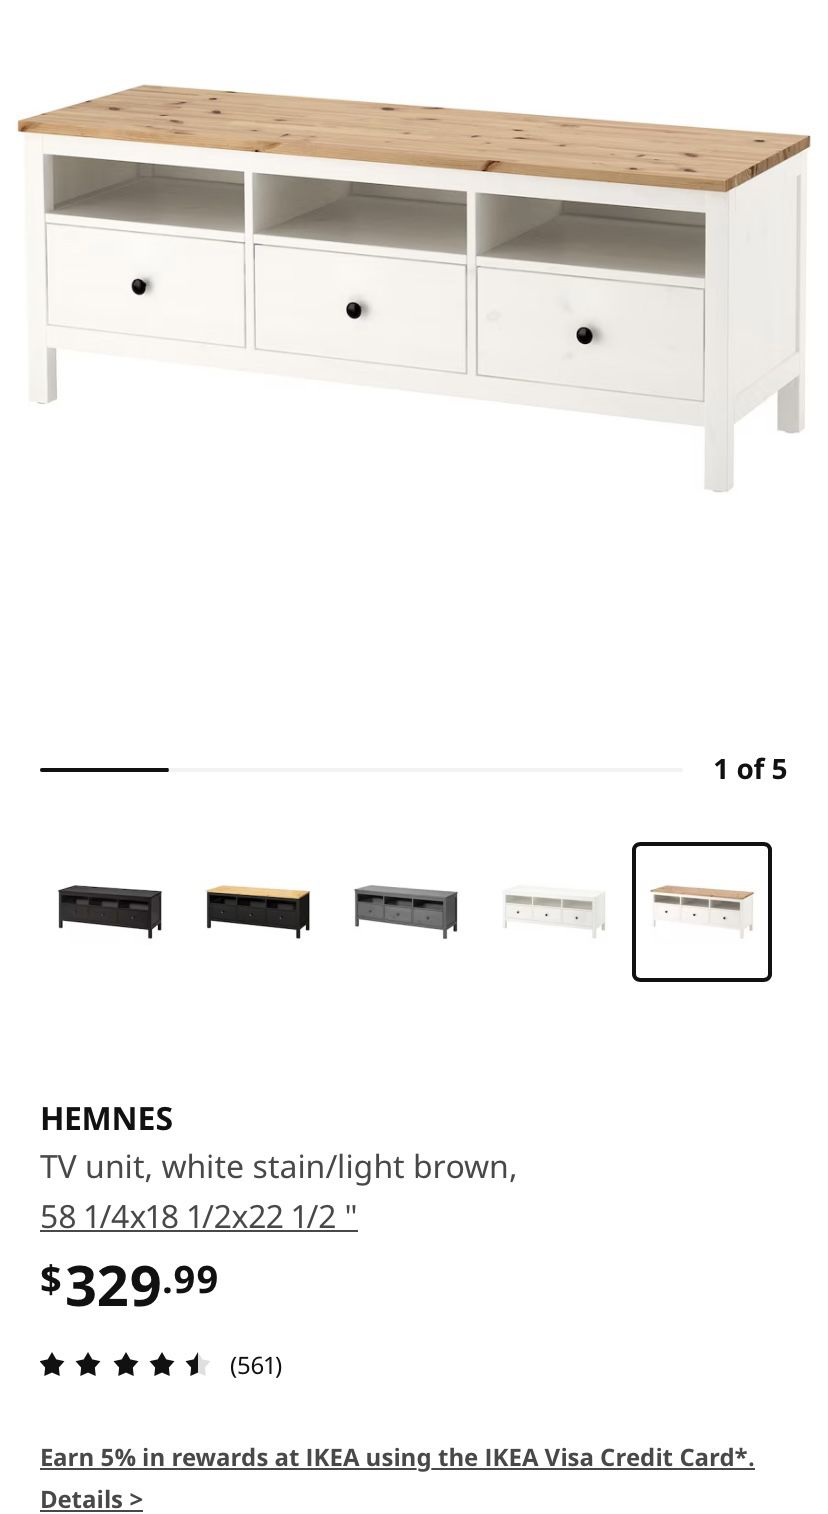 HEMNES IKEA TV Stand white /light brown 